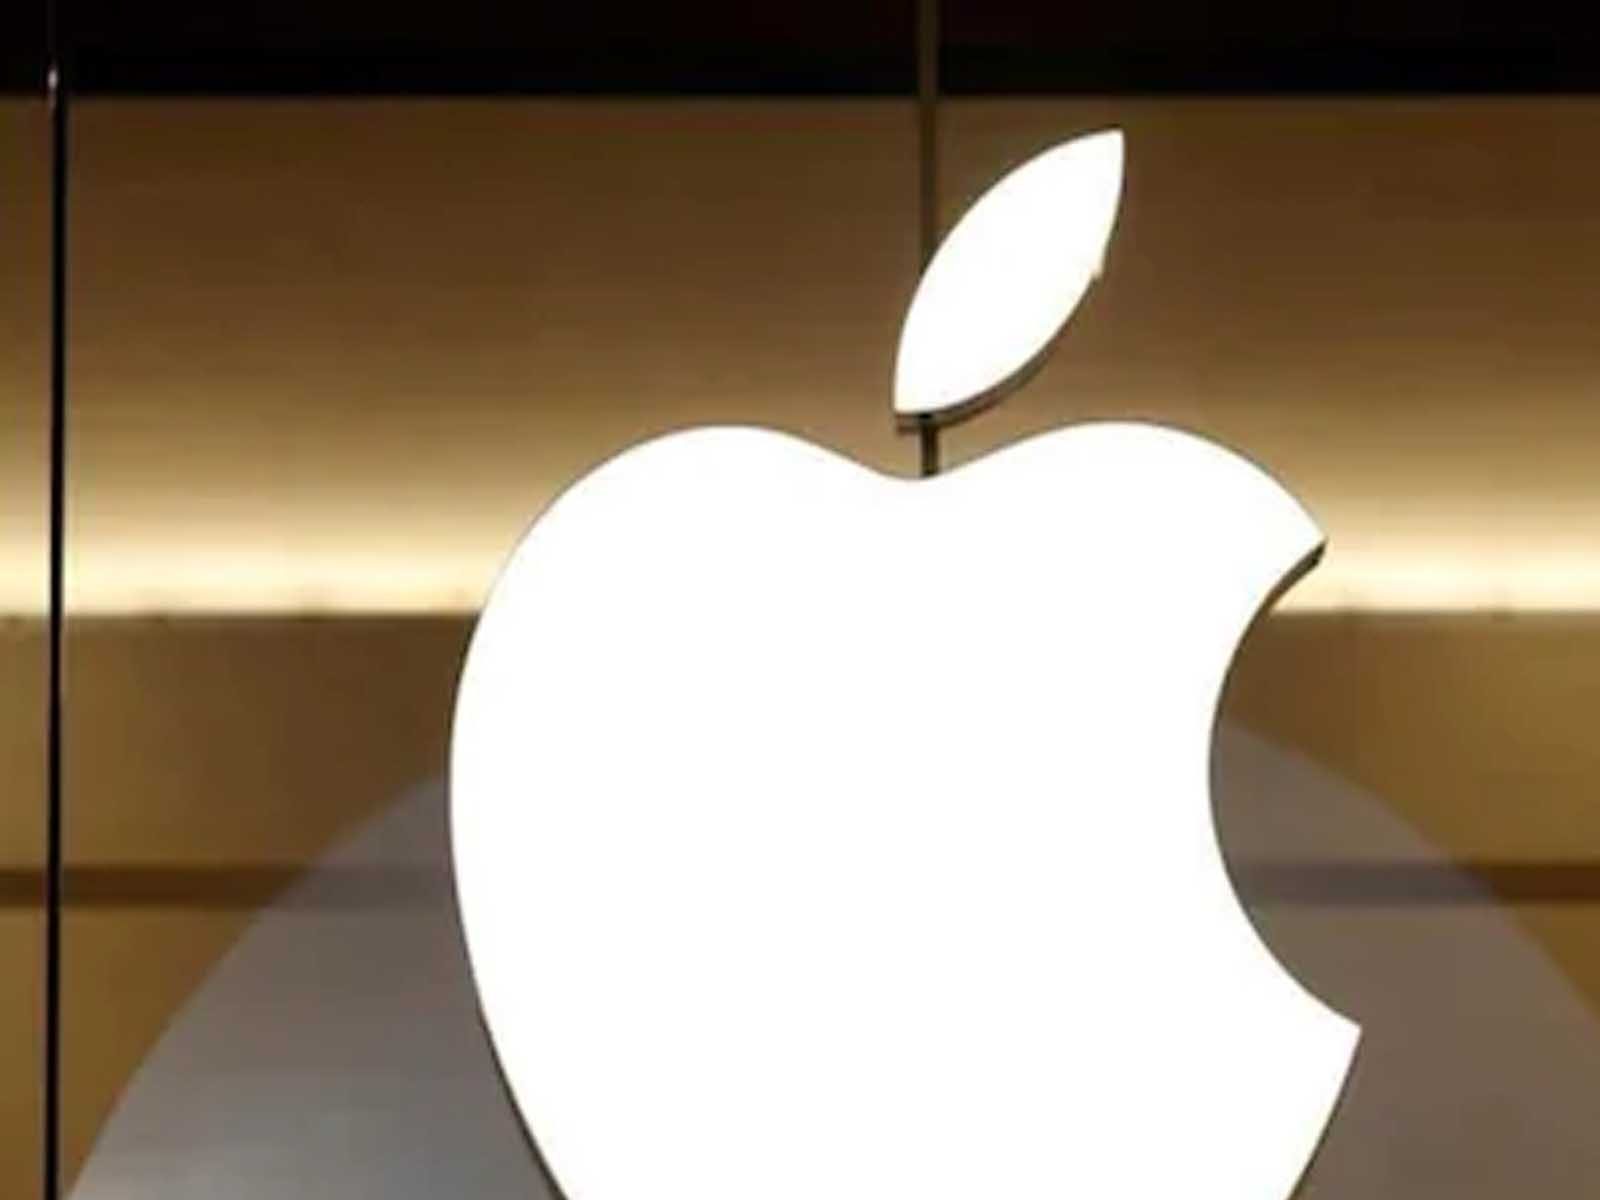 ਖ਼ਤਰੇ 'ਚ ਹਨ Apple iPhone ਤੇ iPad ਯੂਜ਼ਰਸ, ਸਰਕਾਰ ਨੇ ਜਾਰੀ ਕੀਤੀ ਇਹ ਚੇਤਾਵਨੀ